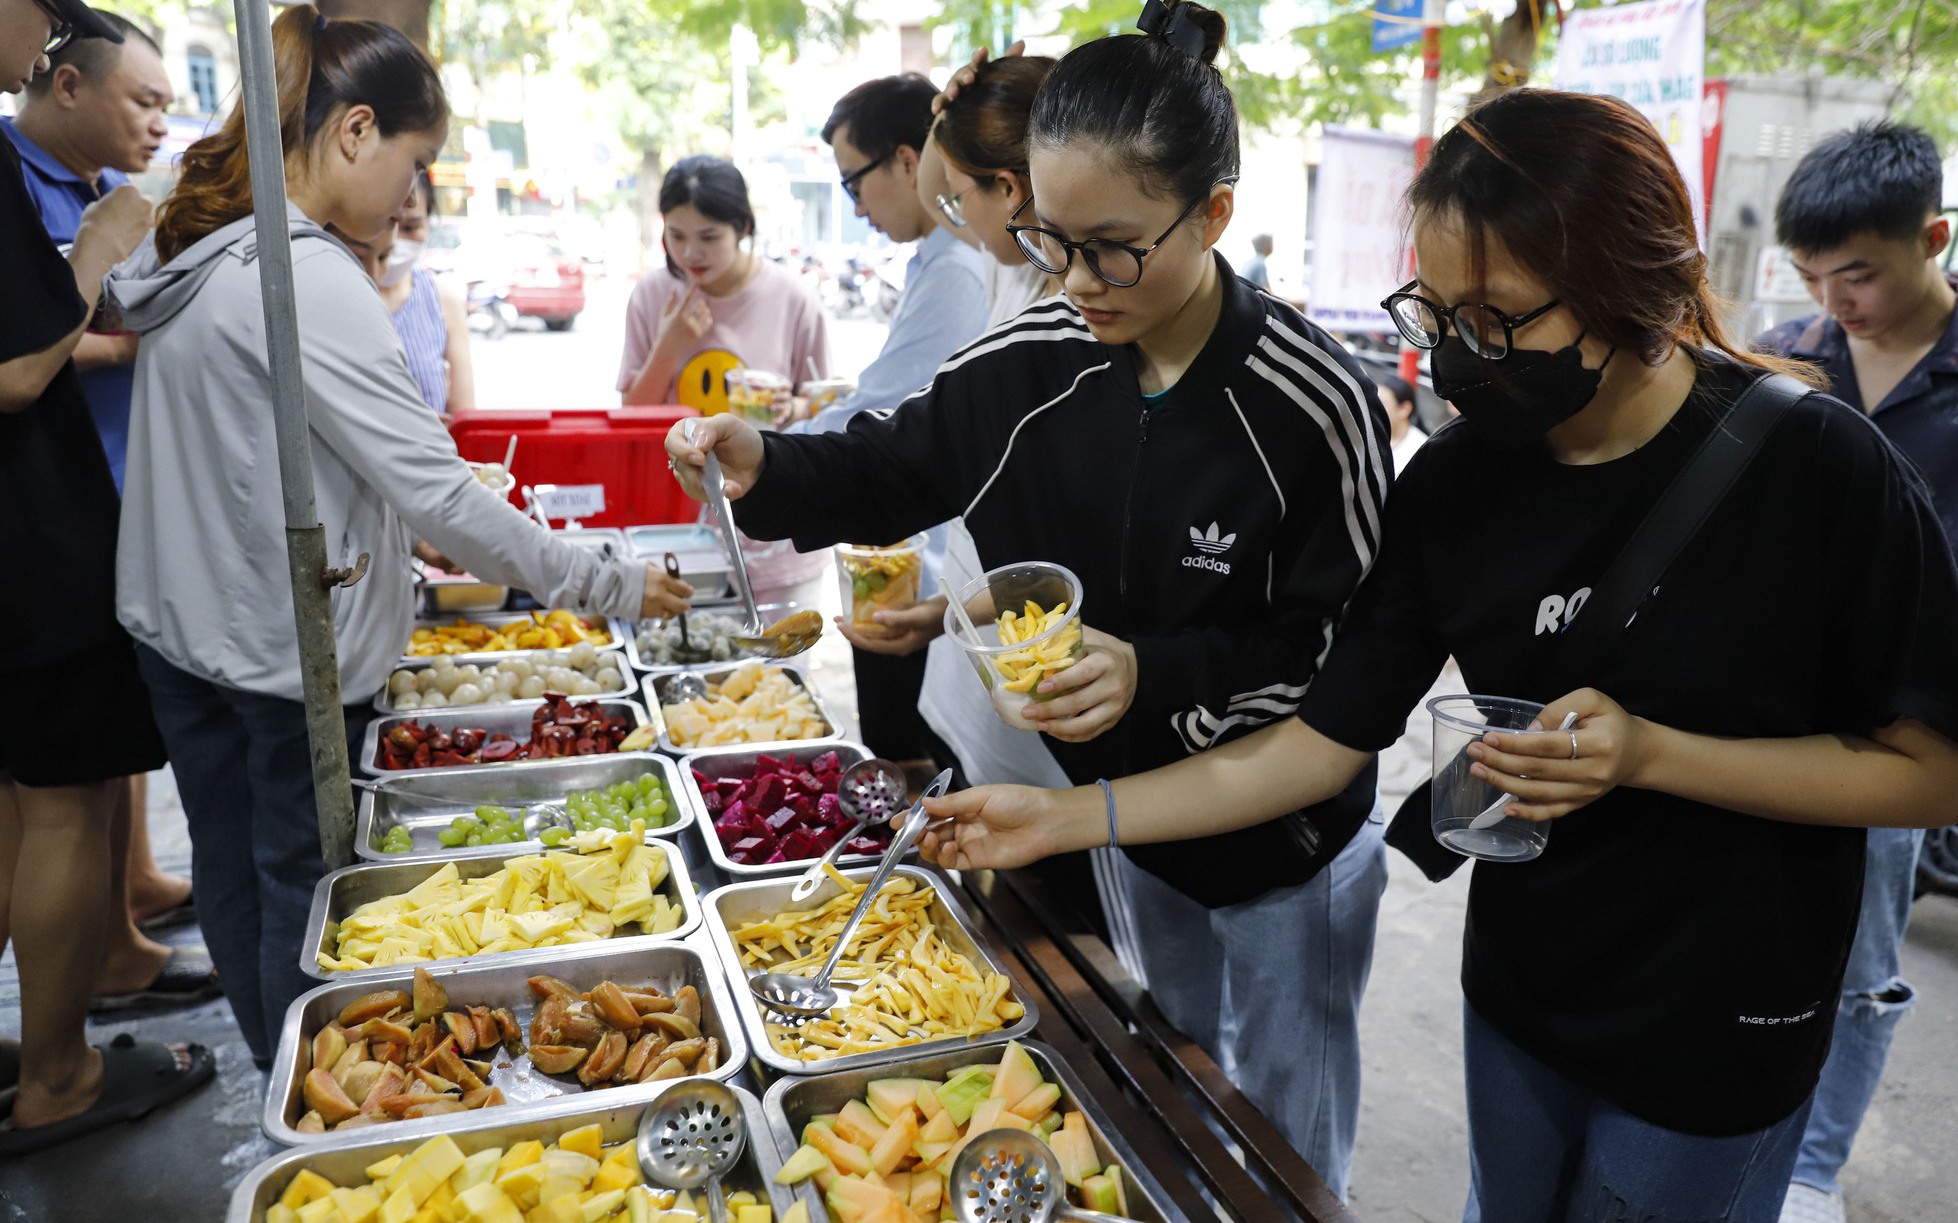 Buffet hoa quả giá siêu rẻ đổ bộ Hà Nội, nhân viên mỏi tay gọt hàng trăm kg mỗi ngày